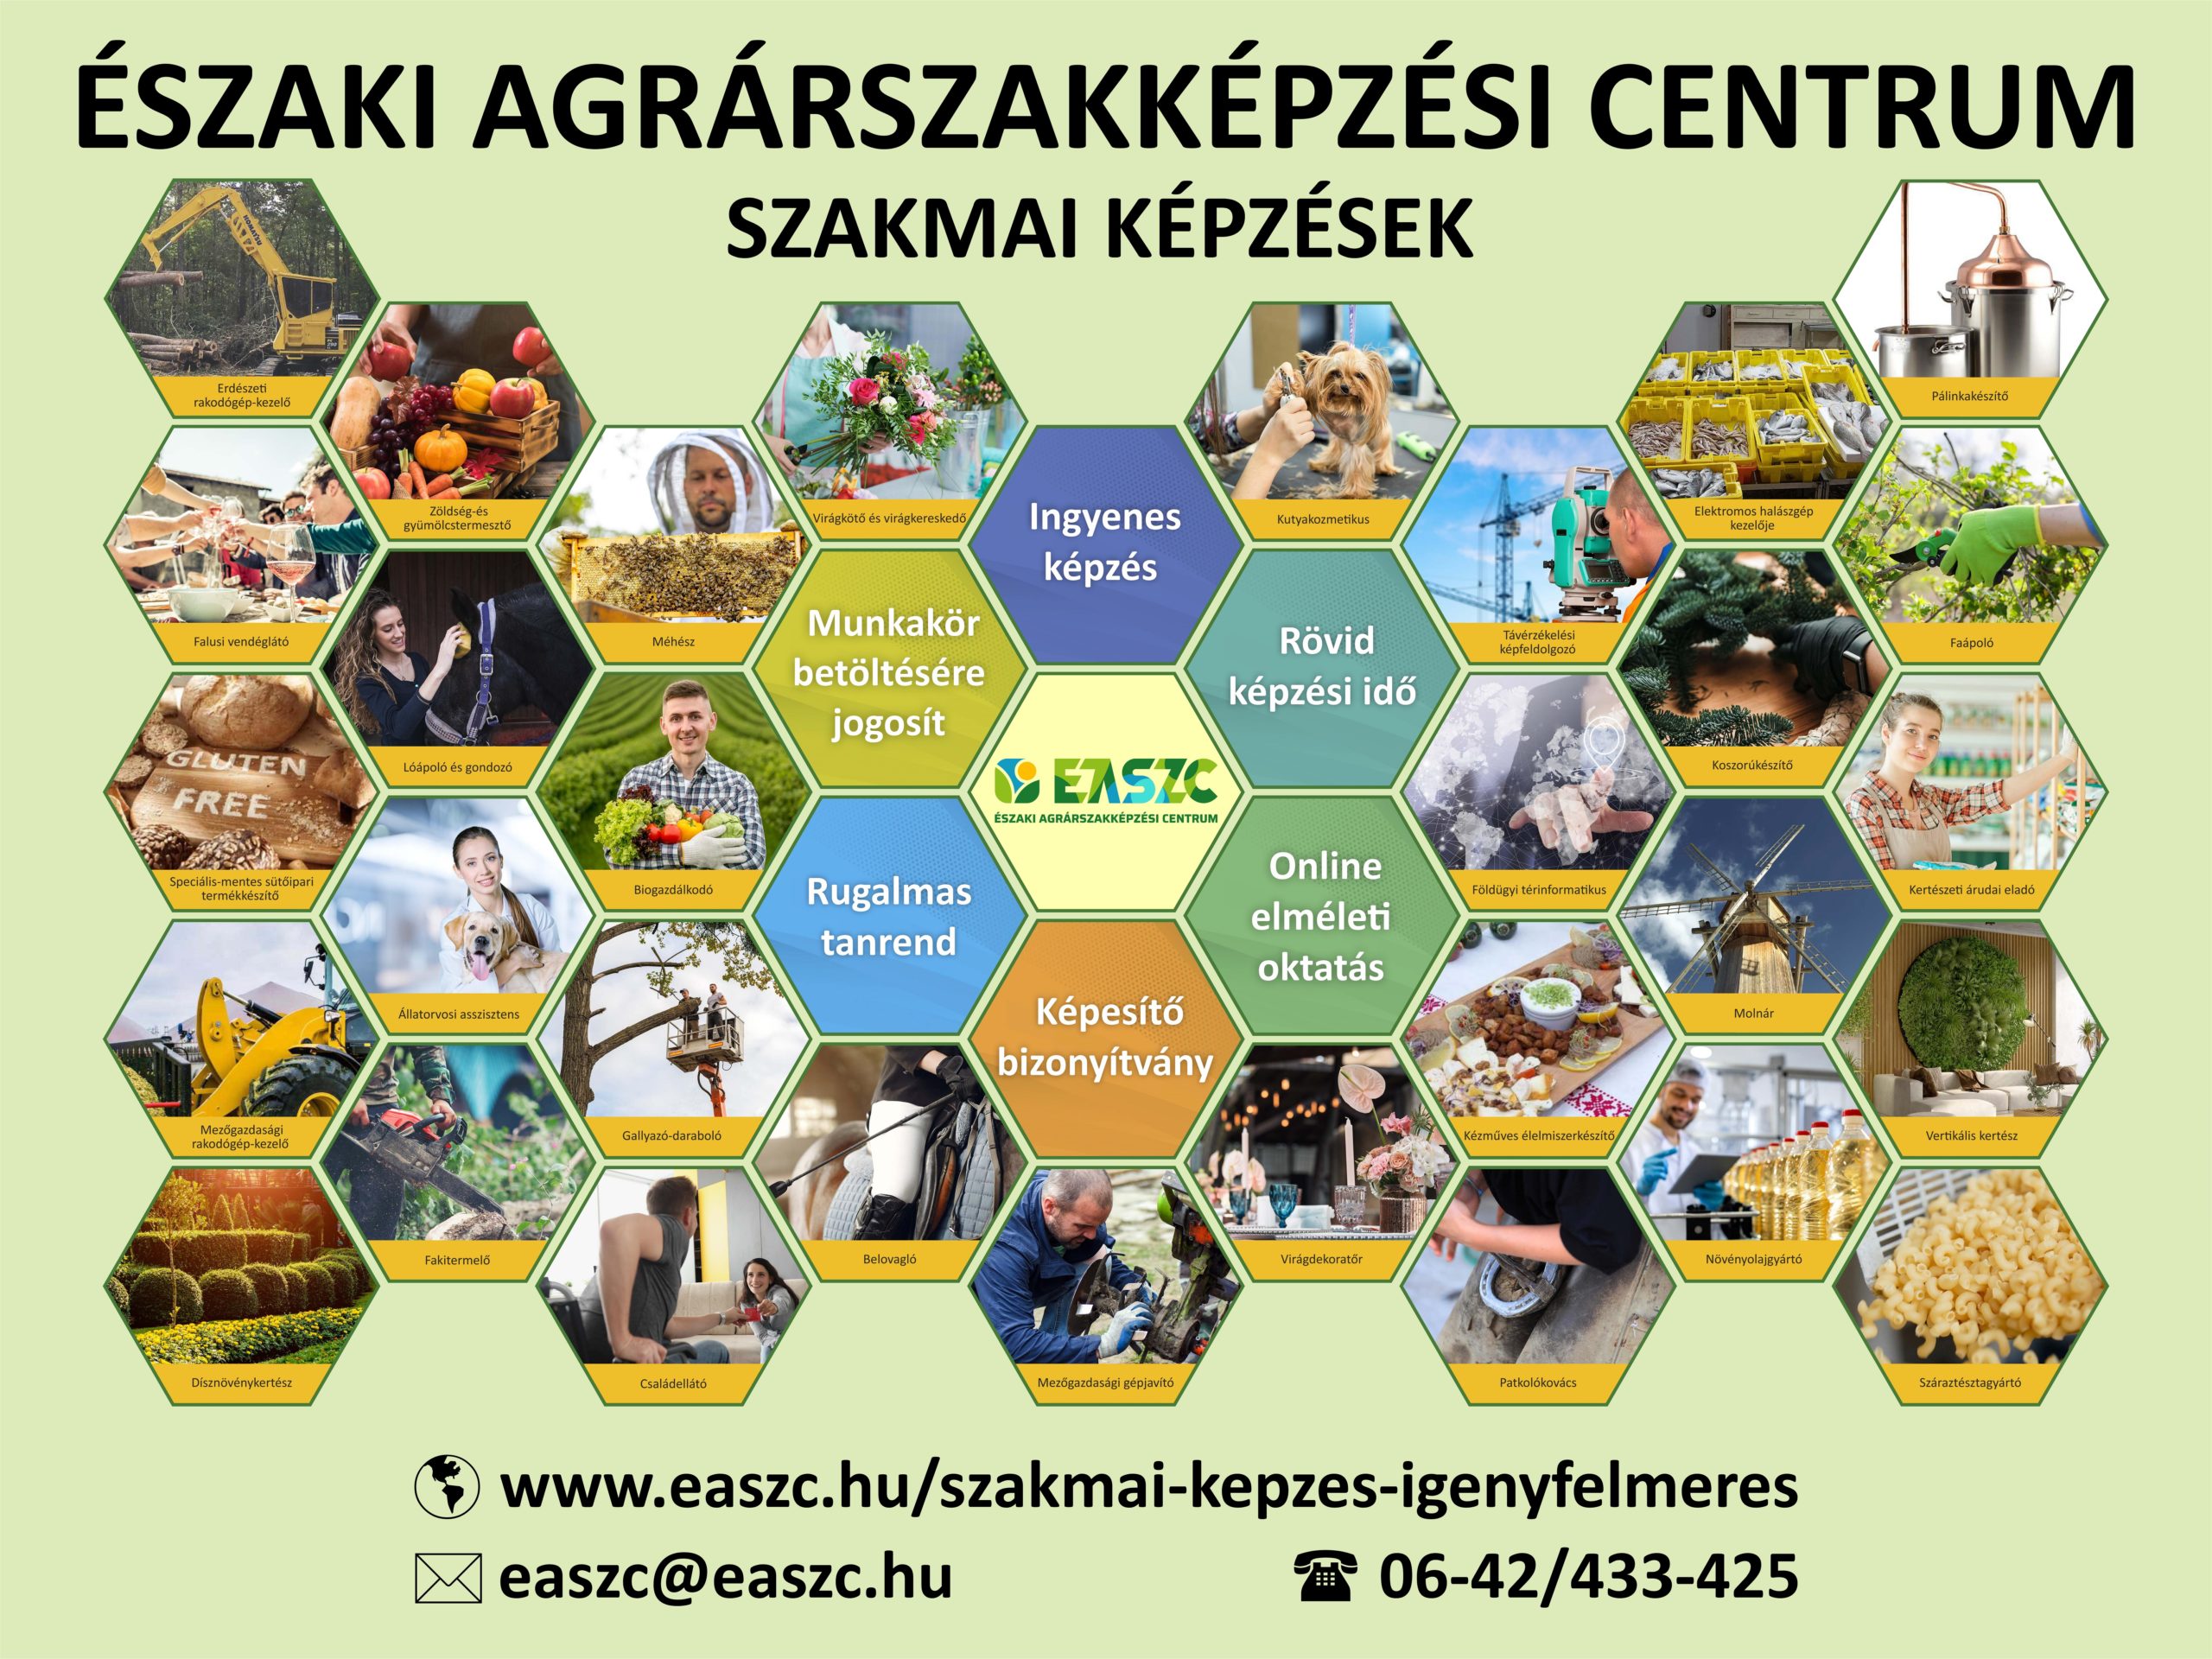 Különféle szakképzési programokat népszerűsítő kollázs az eszaki agárzsonákképzési centrumban, különböző szakemberek, például szakácsok, méhészek, hegesztők képeivel, a képzési témájukkal együtt.